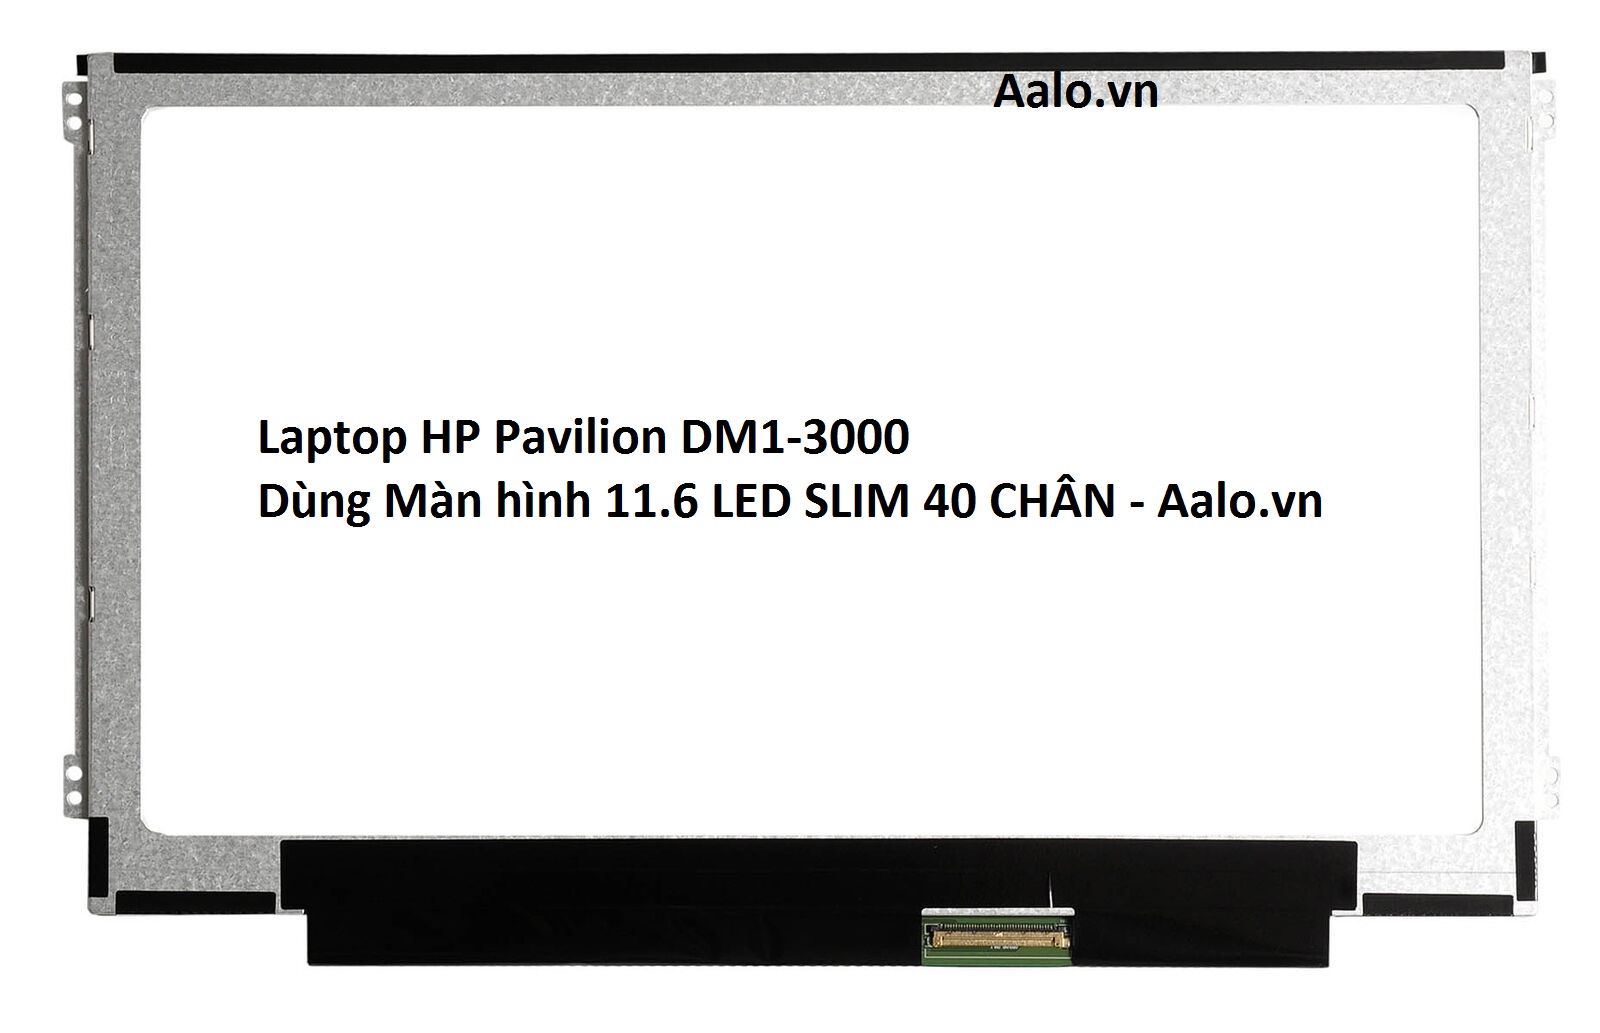 Màn hình Laptop HP Pavilion DM1-3000 - Aalo.vn